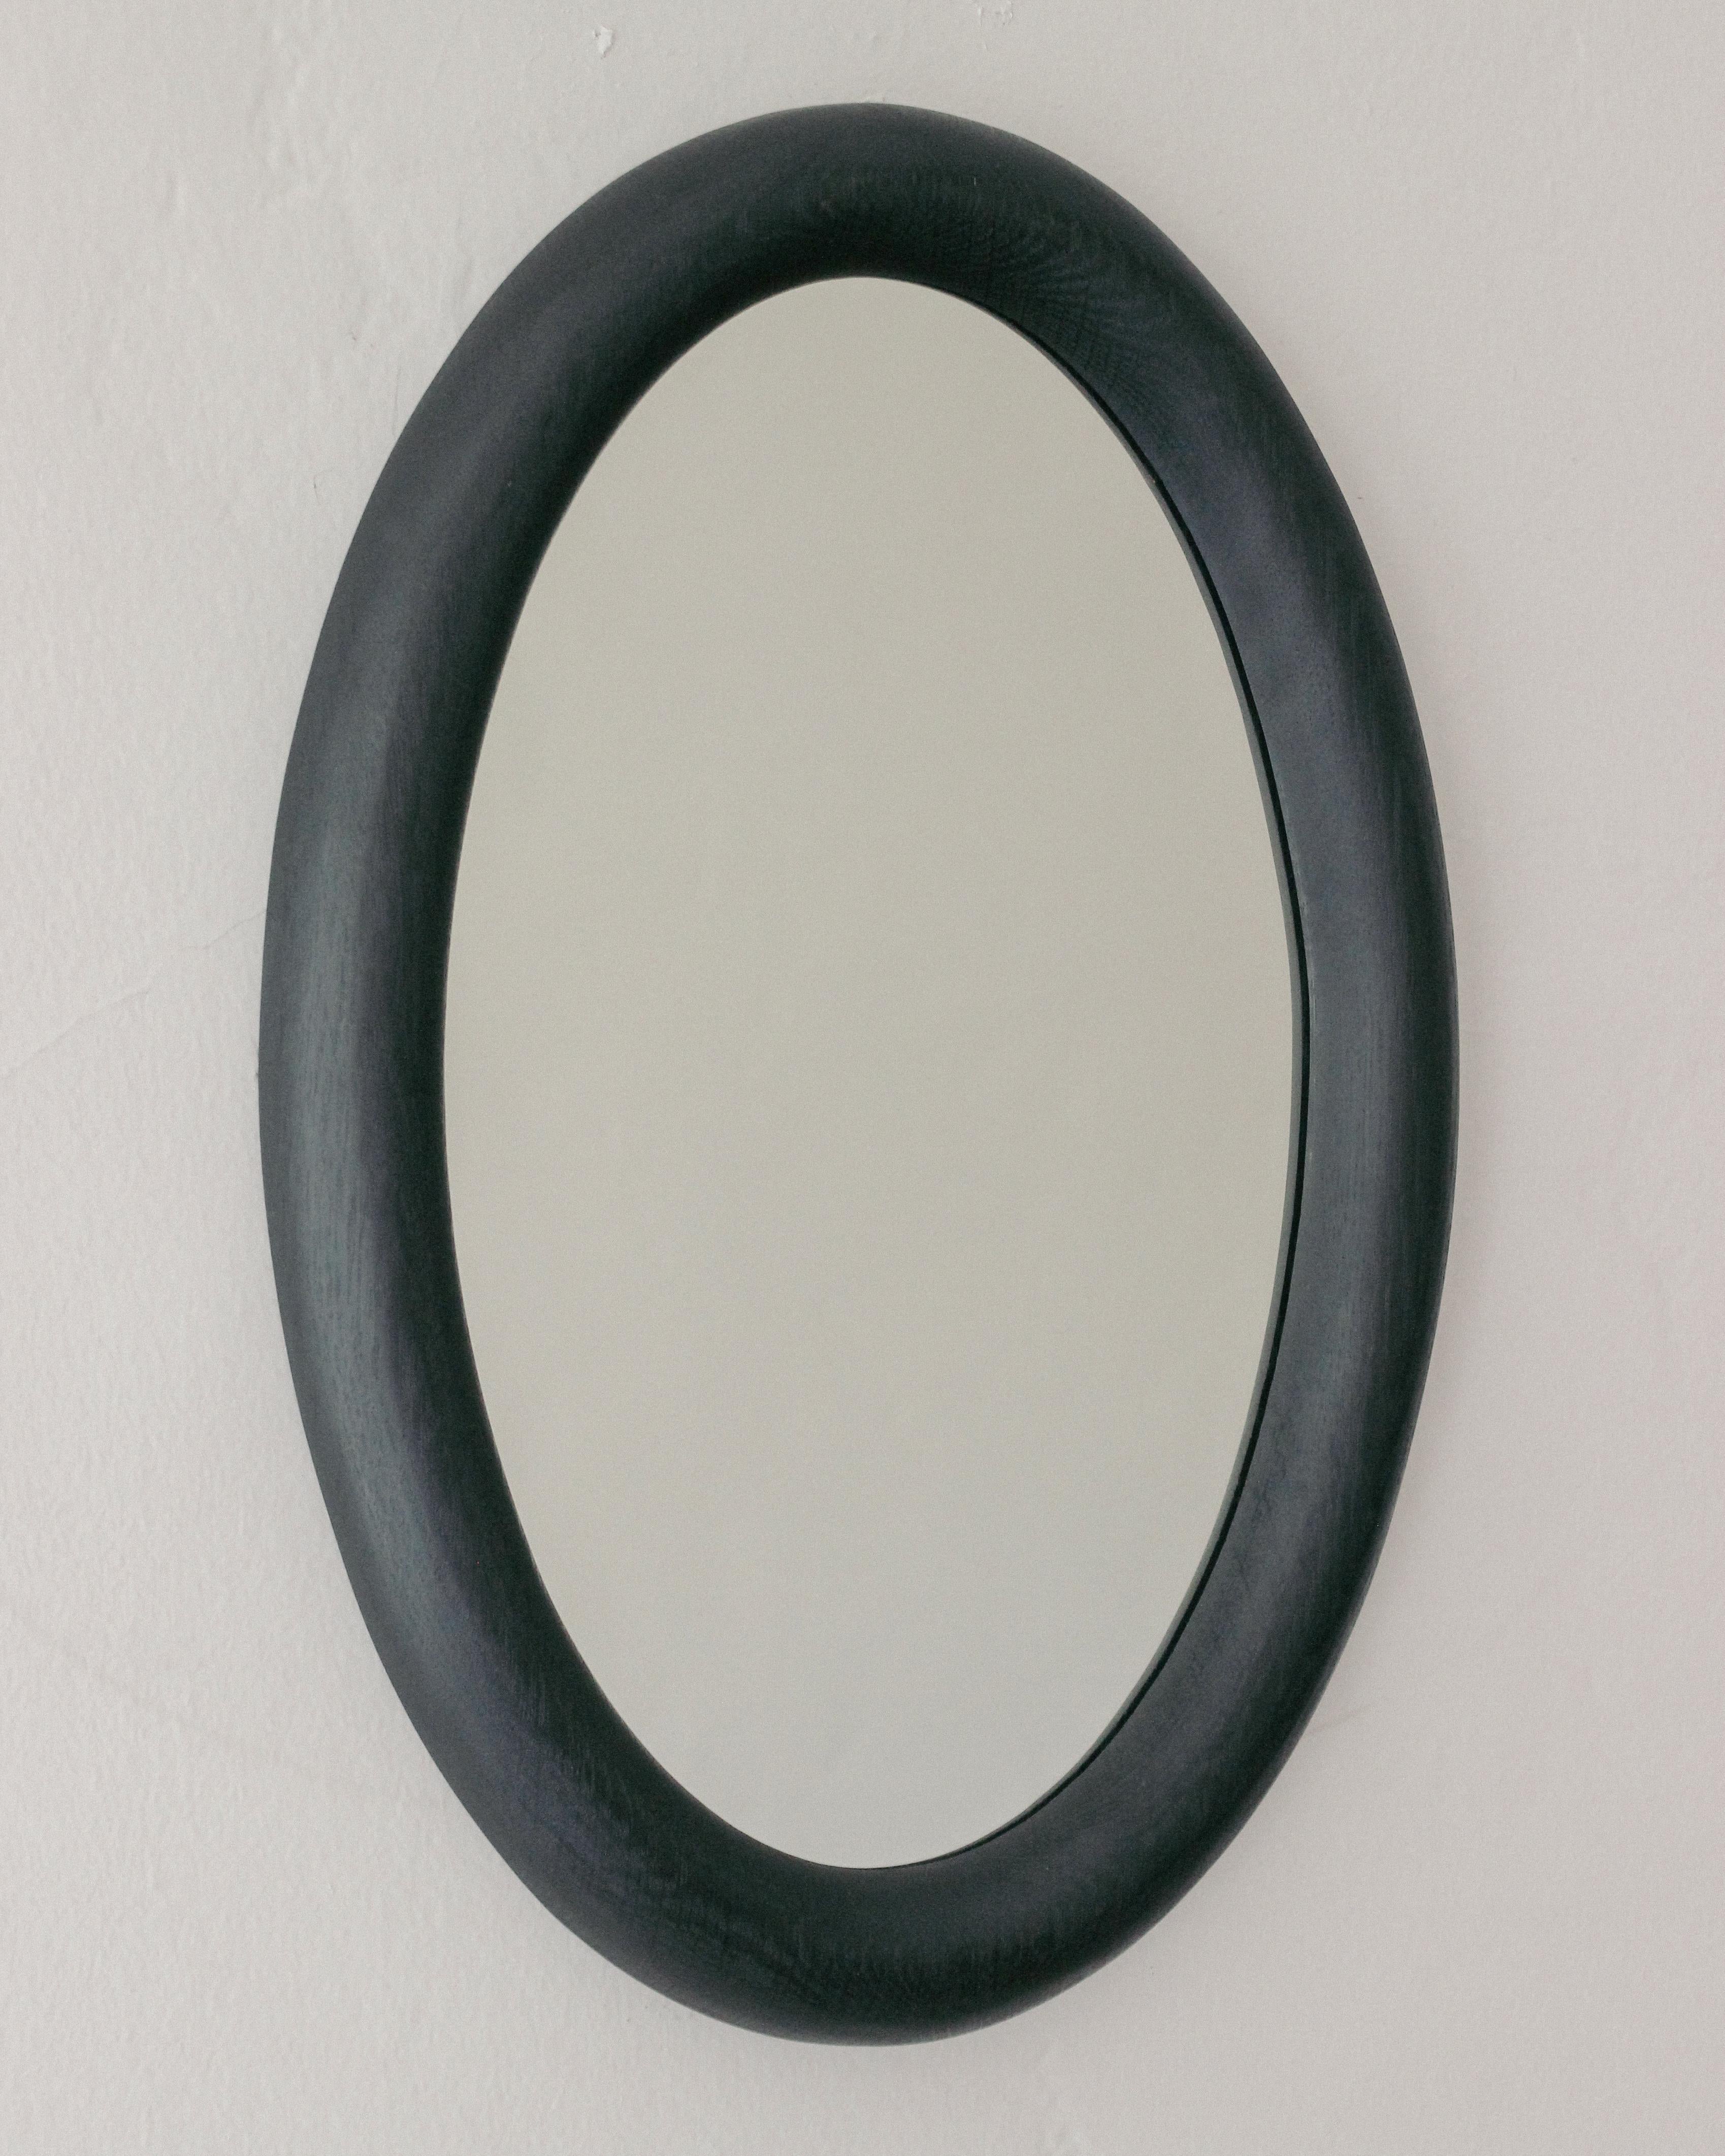 Ebonisierte schwarze Eiche Spiegel, 2024

Vollständig handgefertigt und fertiggestellt in Los Angeles mit kundenspezifischen Messingbeschlägen überall. 

Er ist so konzipiert, dass er komplett bündig an der Wand montiert werden kann und einen